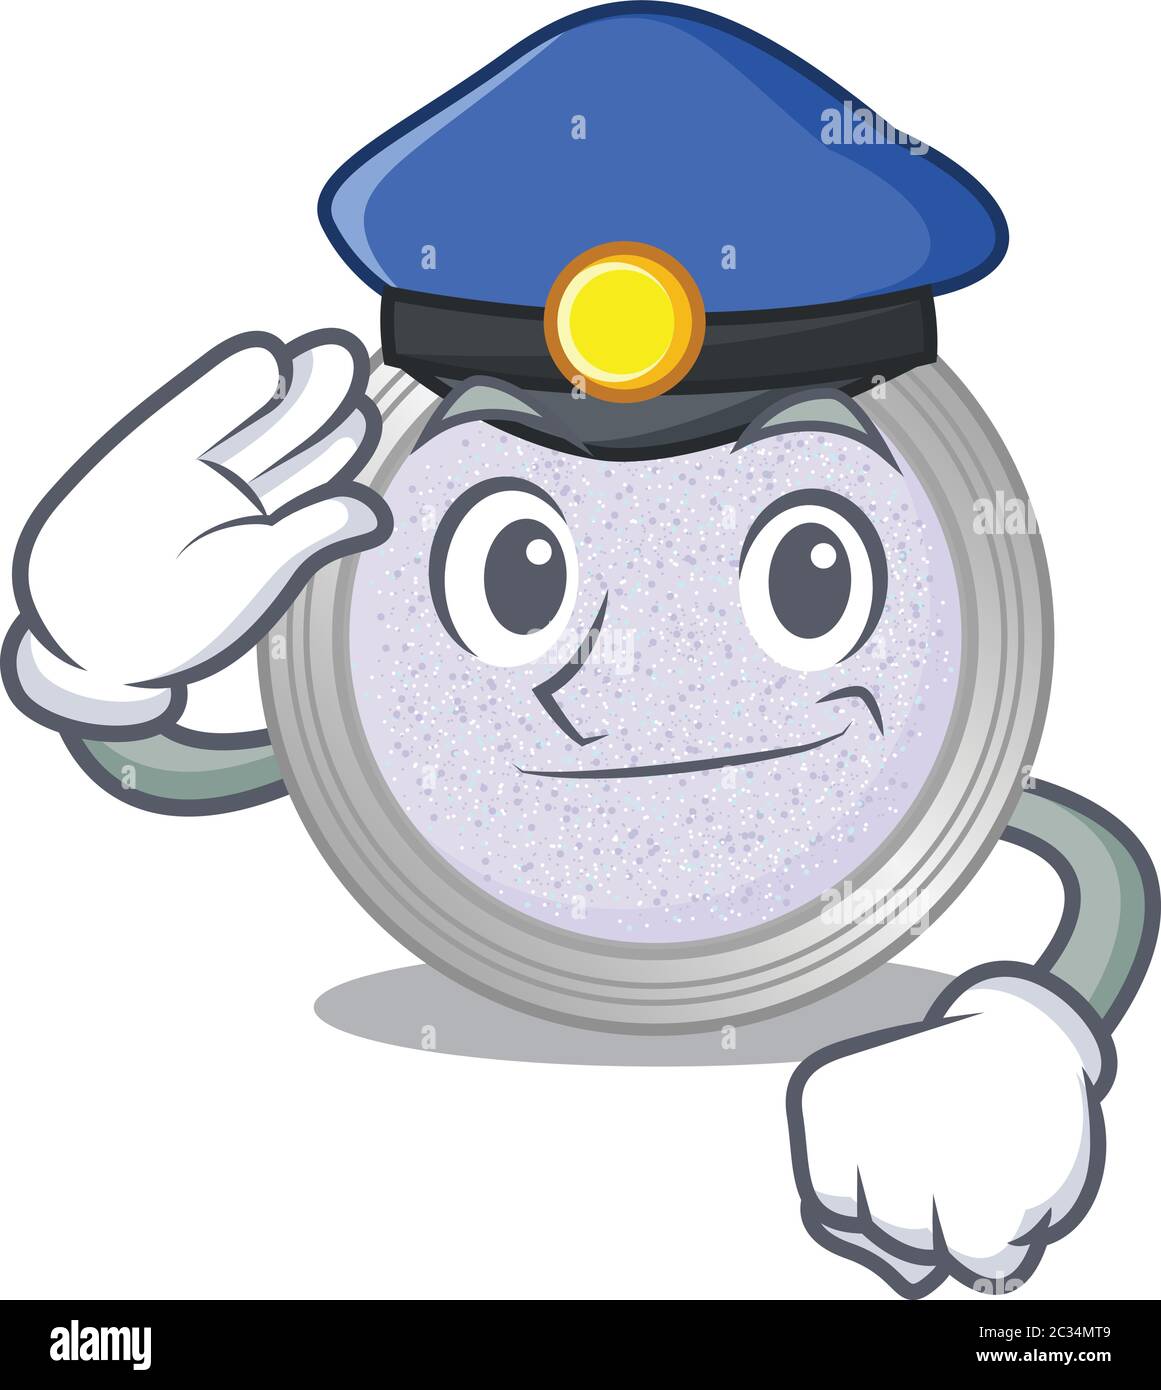 Disegno cartoon ufficiale della polizia di ombretto con glitter che indossa  un cappello blu Immagine e Vettoriale - Alamy